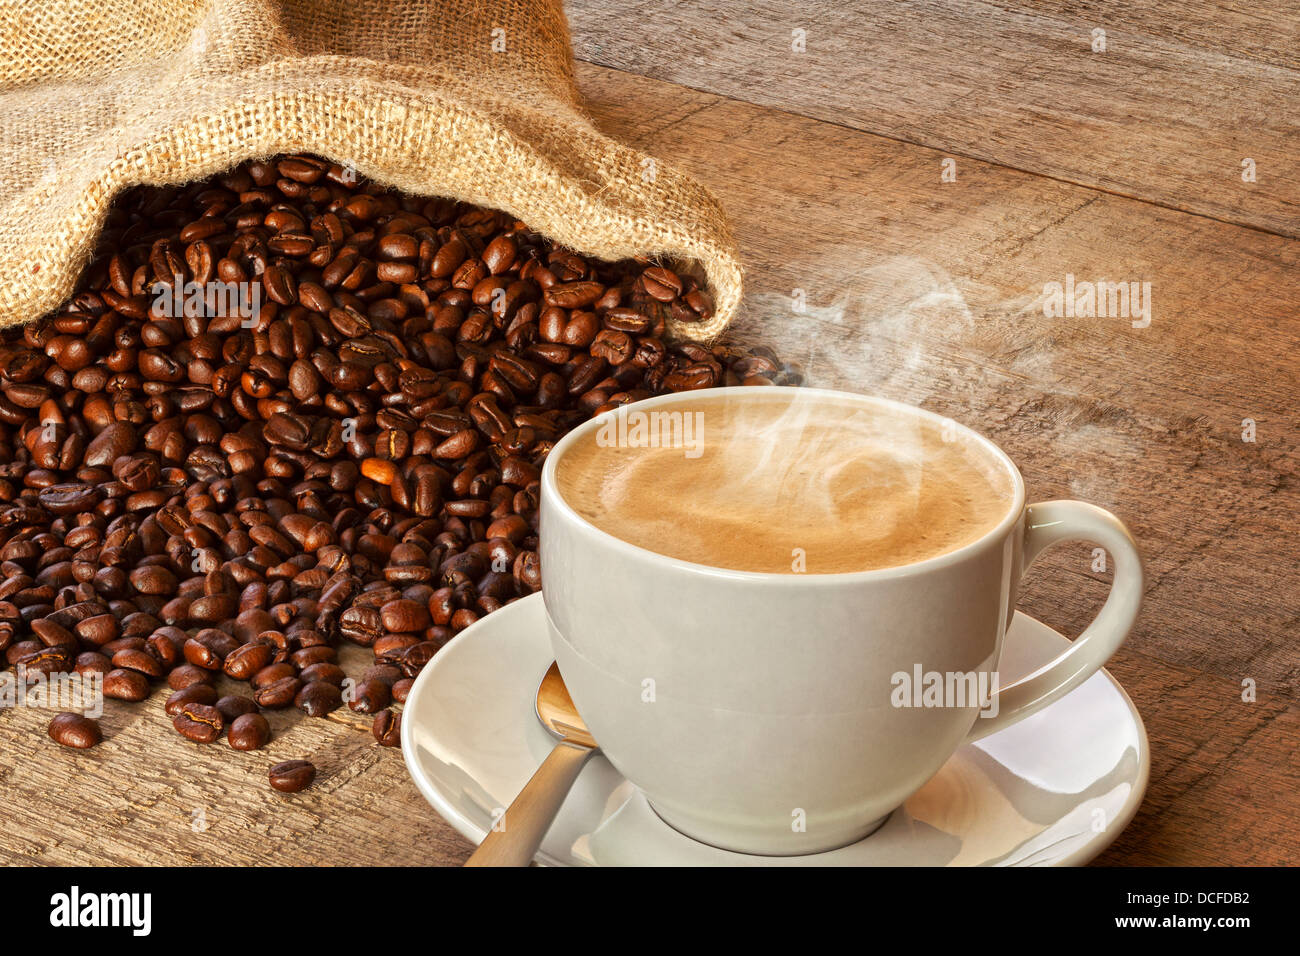 Café y bolsa de granos de café: una taza de café espresso de vapor caliente sobre un fondo de tablones rústicos, con un saco de café... Foto de stock